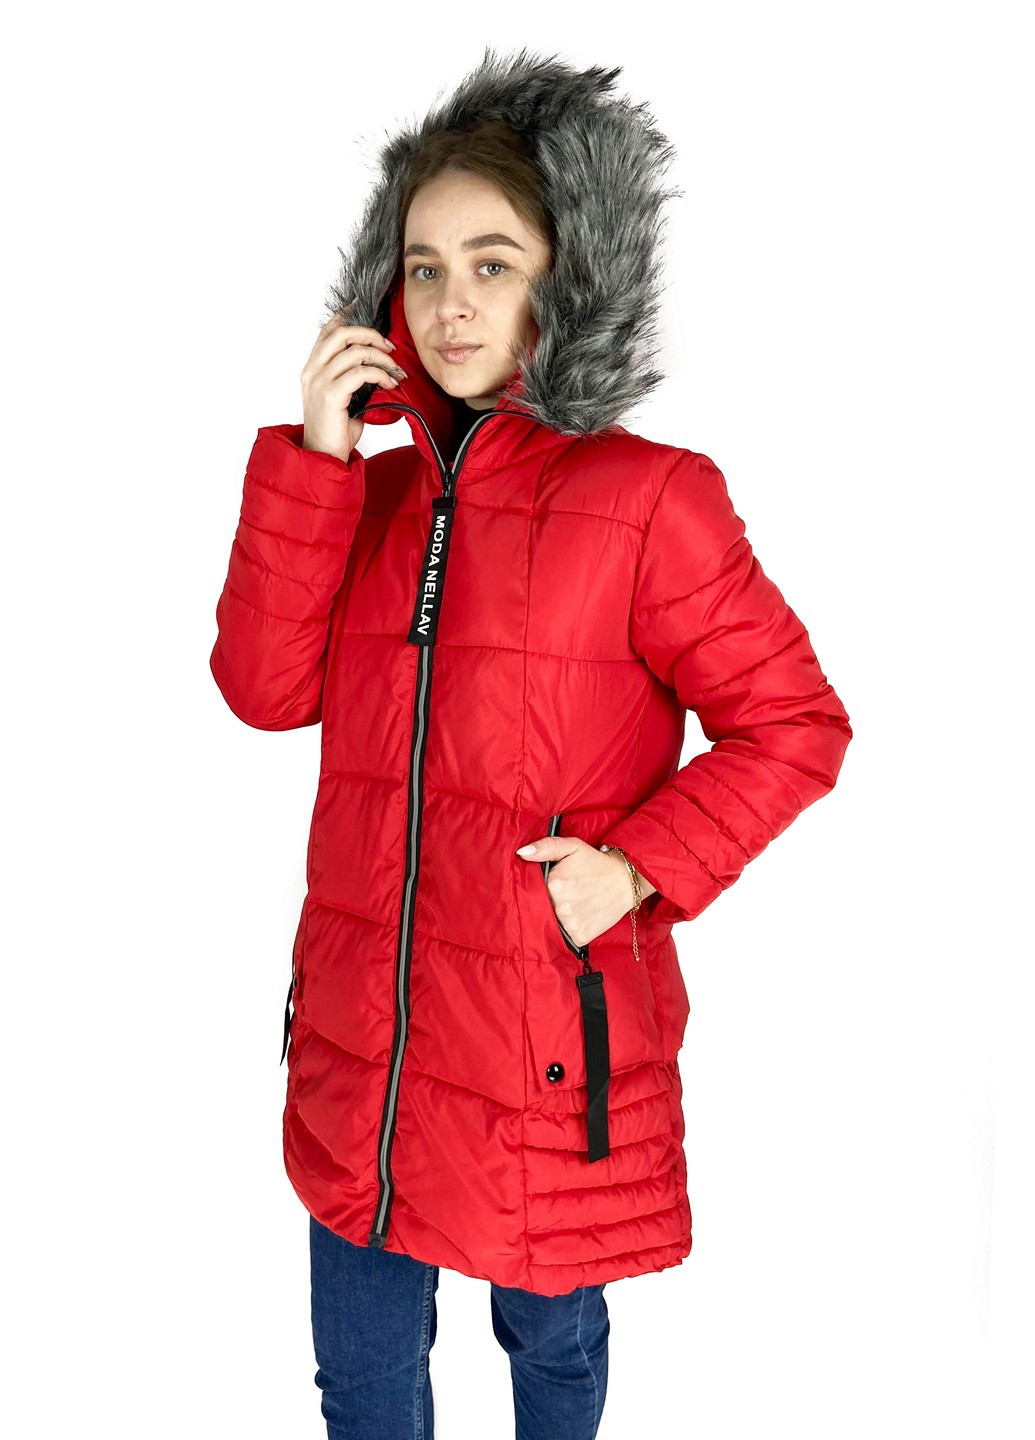 Червона зимня куртка Shangyujie